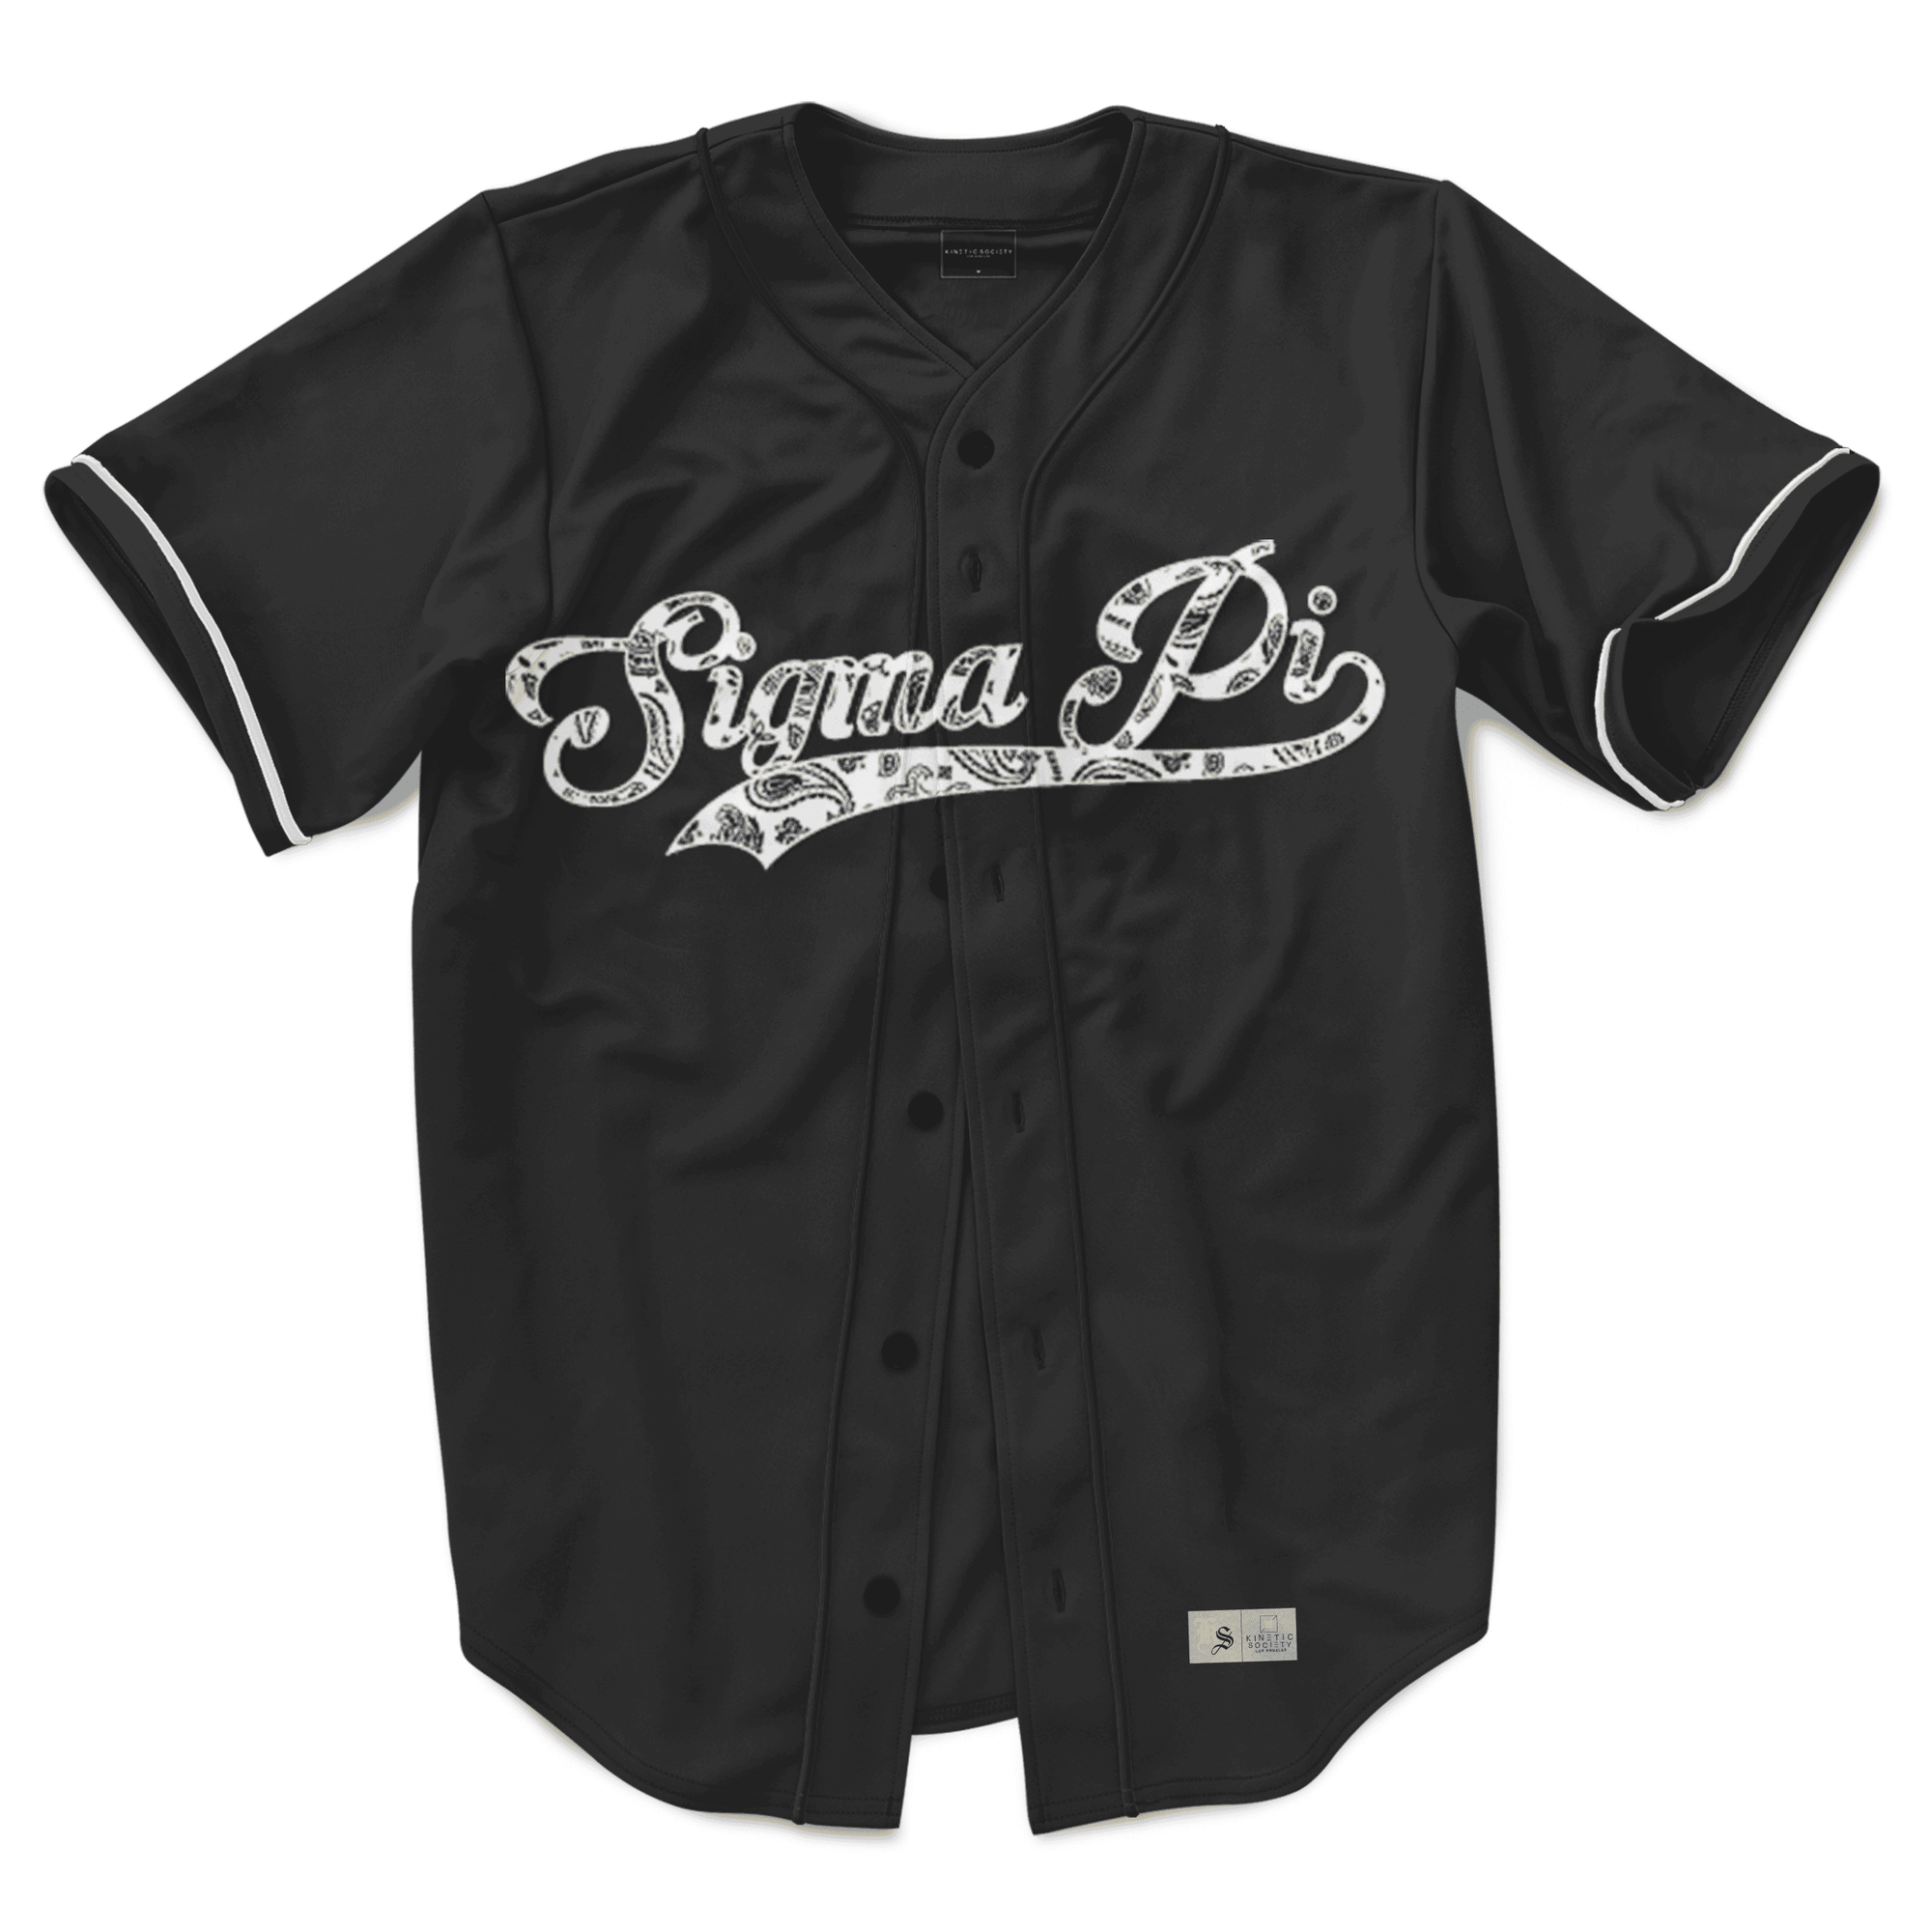 Sigma Pi - Paisley Baseball Jersey